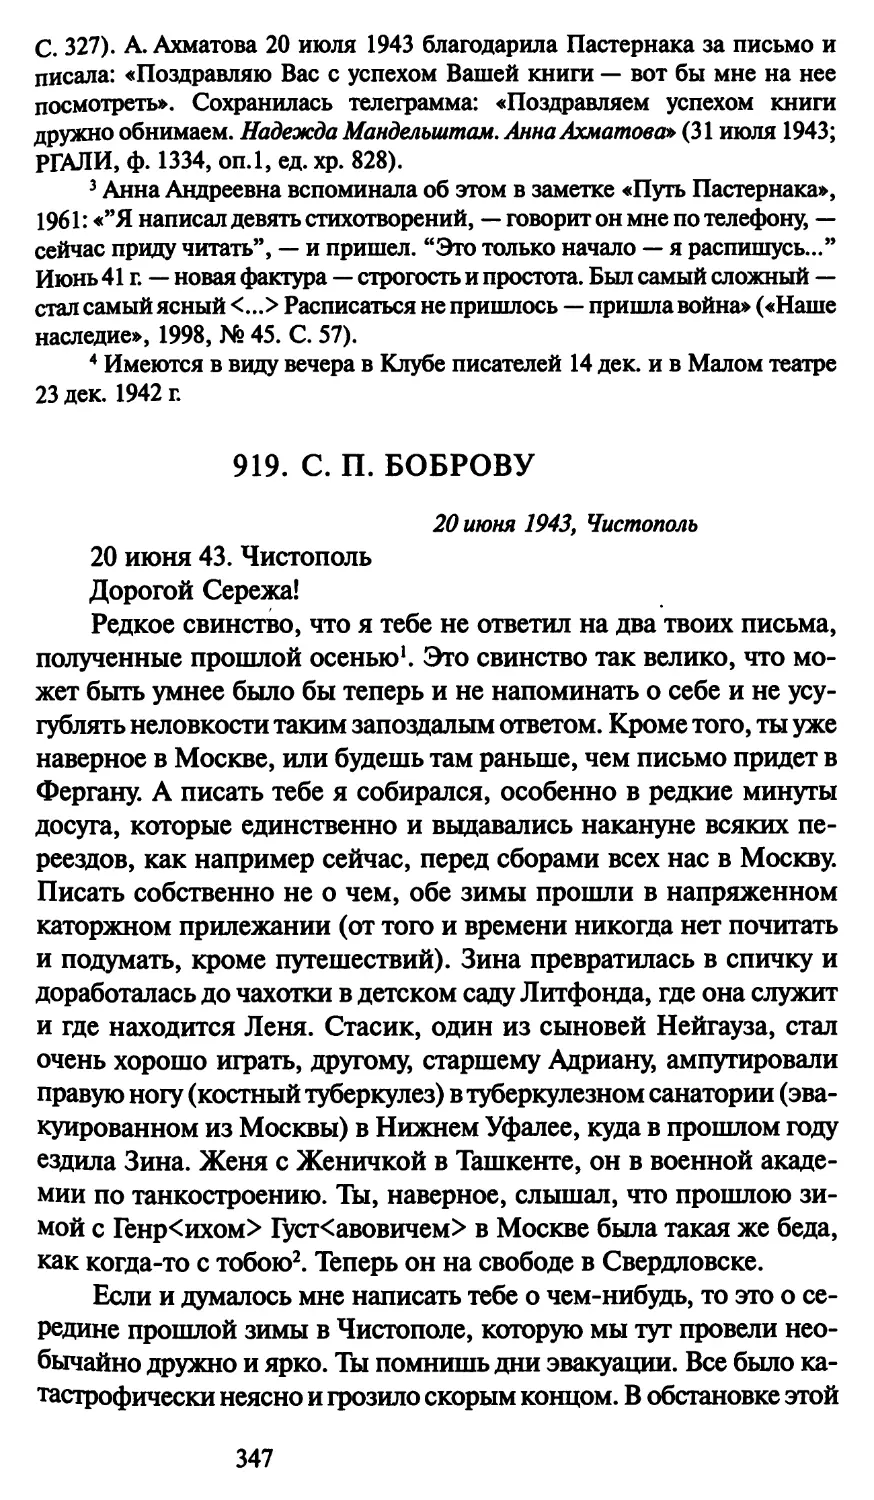 919. С. П. Боброву 20 июня 1943